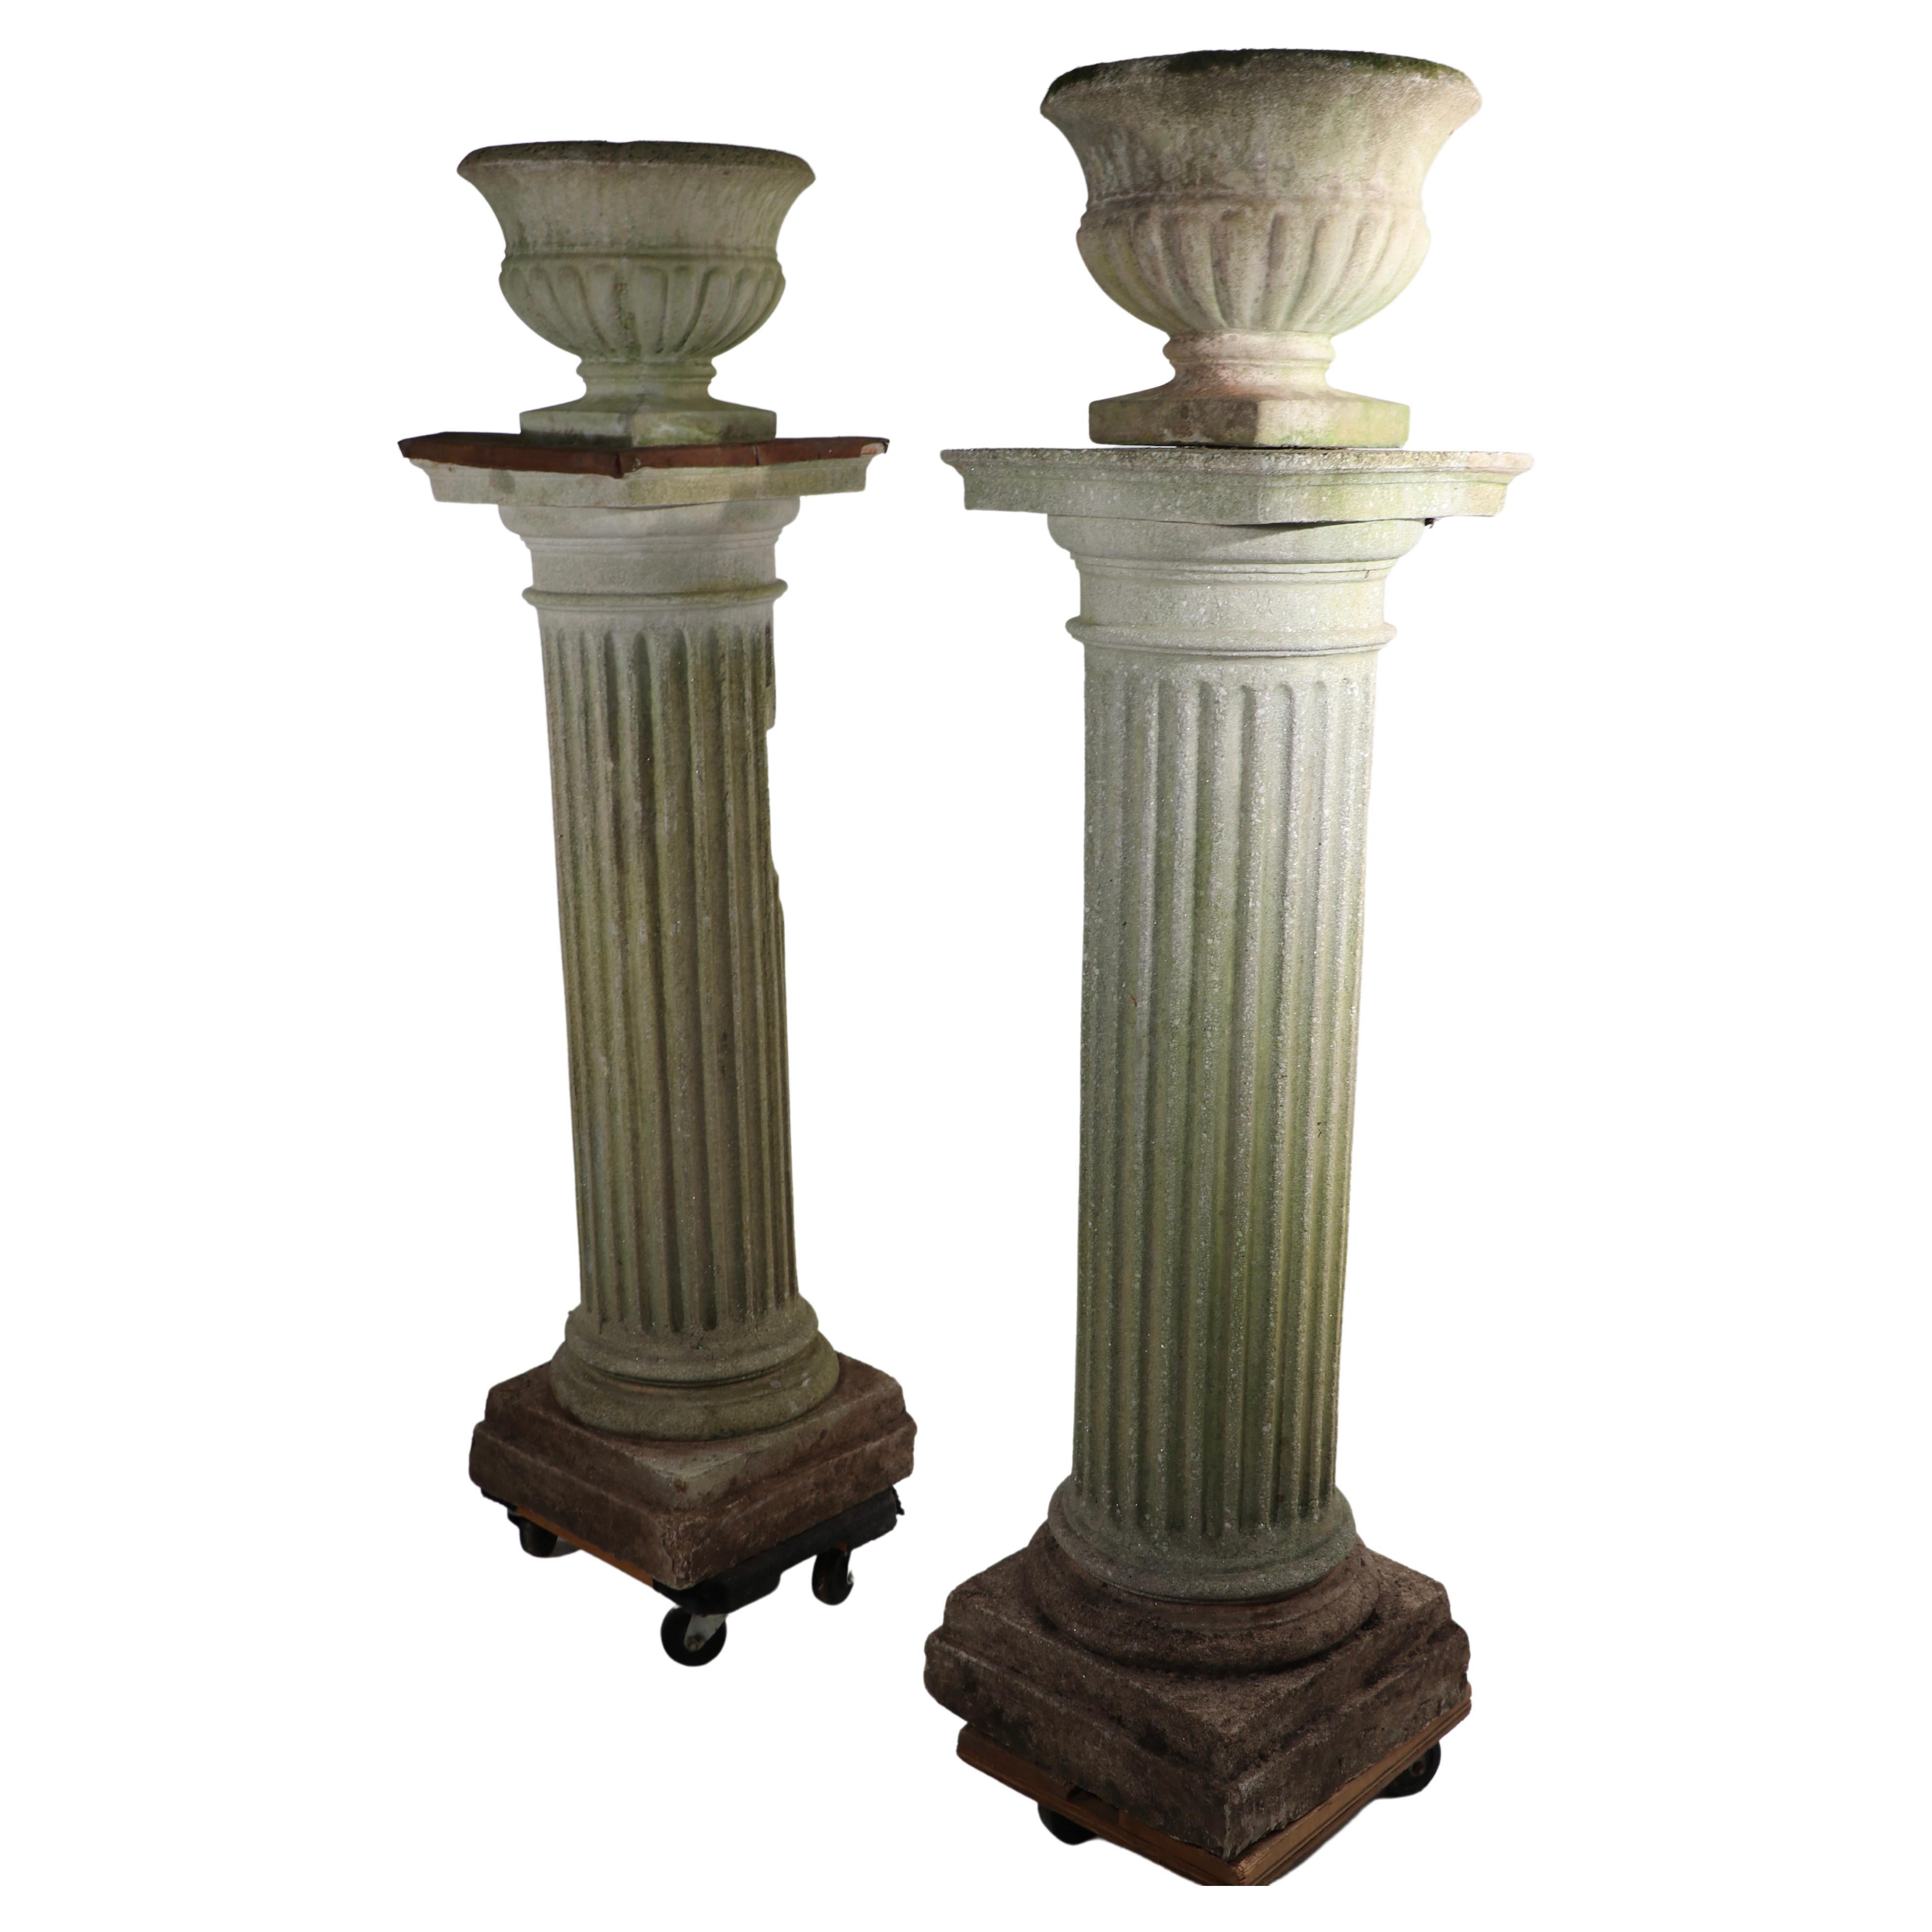 Beeindruckendes Paar von Kunststein römischen dorischen Stil Säulen jeweils mit einem Guss Stein Campania von jardiniere, Pflanzer montieren. Die Pflanzgefäße sind abnehmbar, wenn Sie andere Gestaltungspläne haben, die nur Säulen vorsehen.